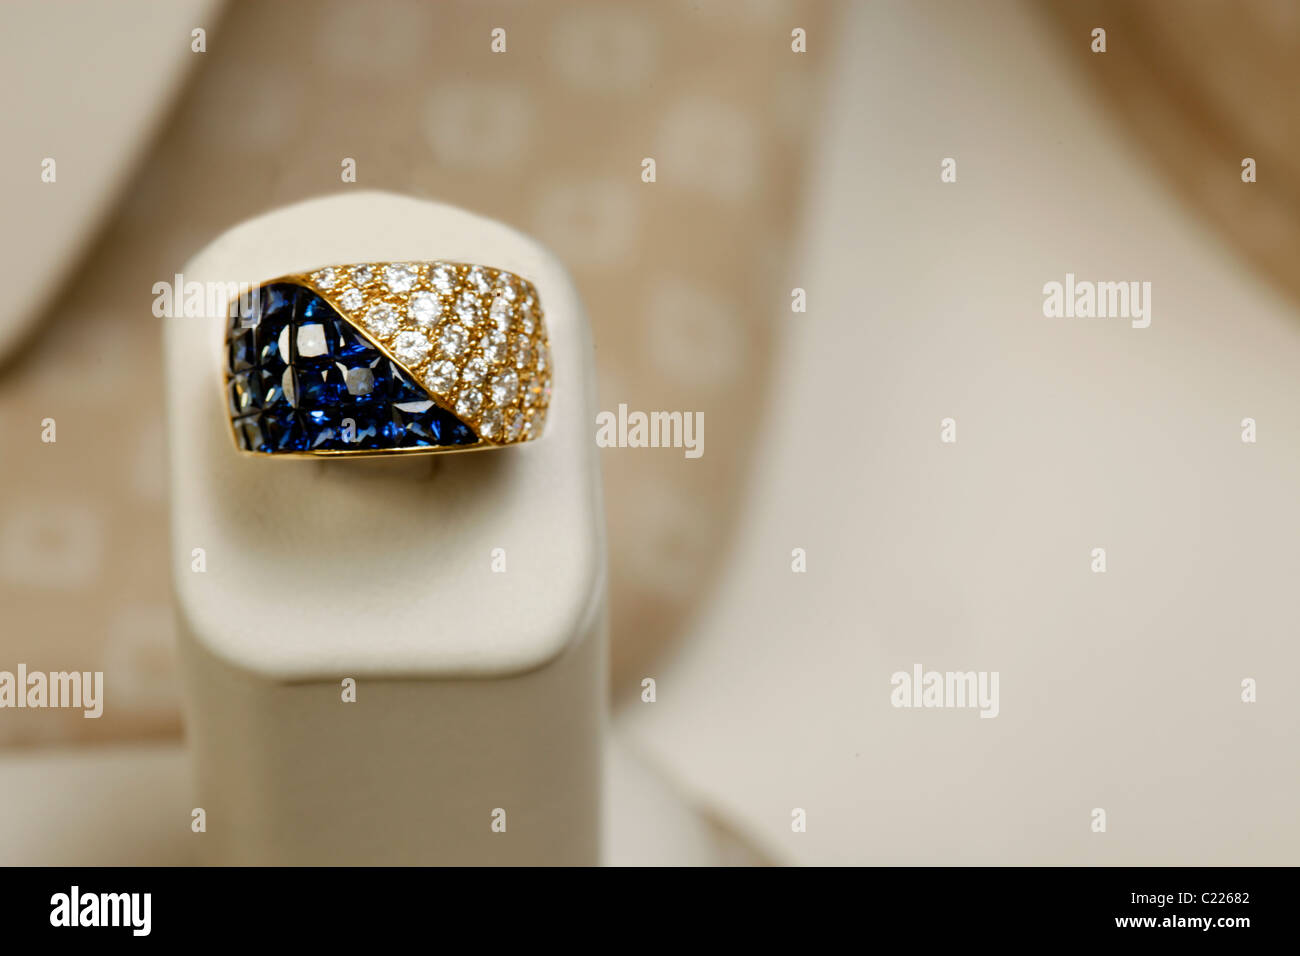 18k yellow gold ring 5.25 carats of princess cut saphires and 1.82 carats of diamonds Stock Photo